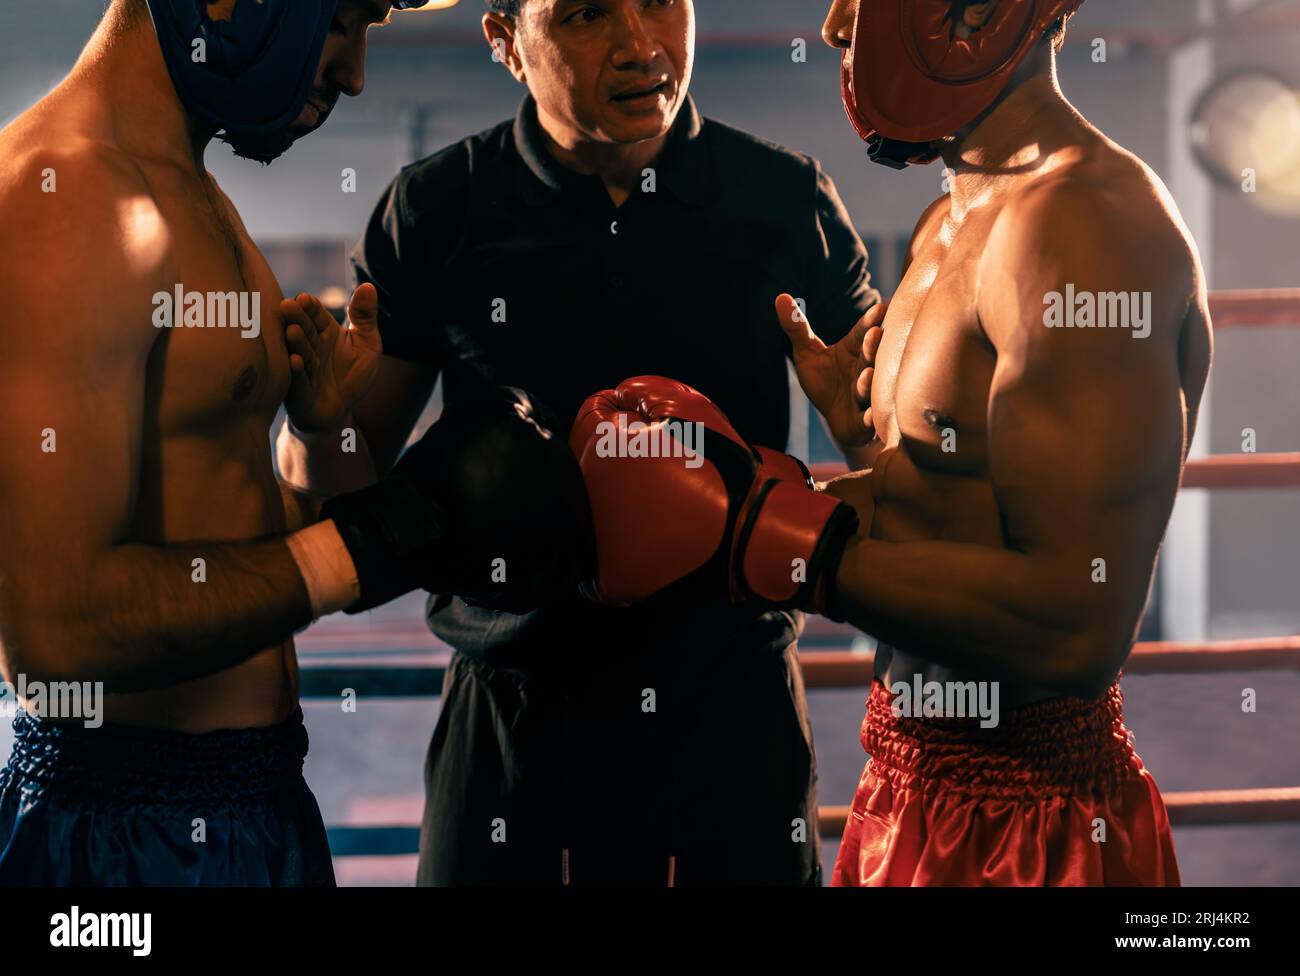 Ein Boxer mit Schutzhelm oder Kopfschutz zeigt sich aneinander, während der Schiedsrichter dem Gegner die Regeln für die Interaktion erklärt, bevor er mit dem Boxkampf beginnt Stockfoto